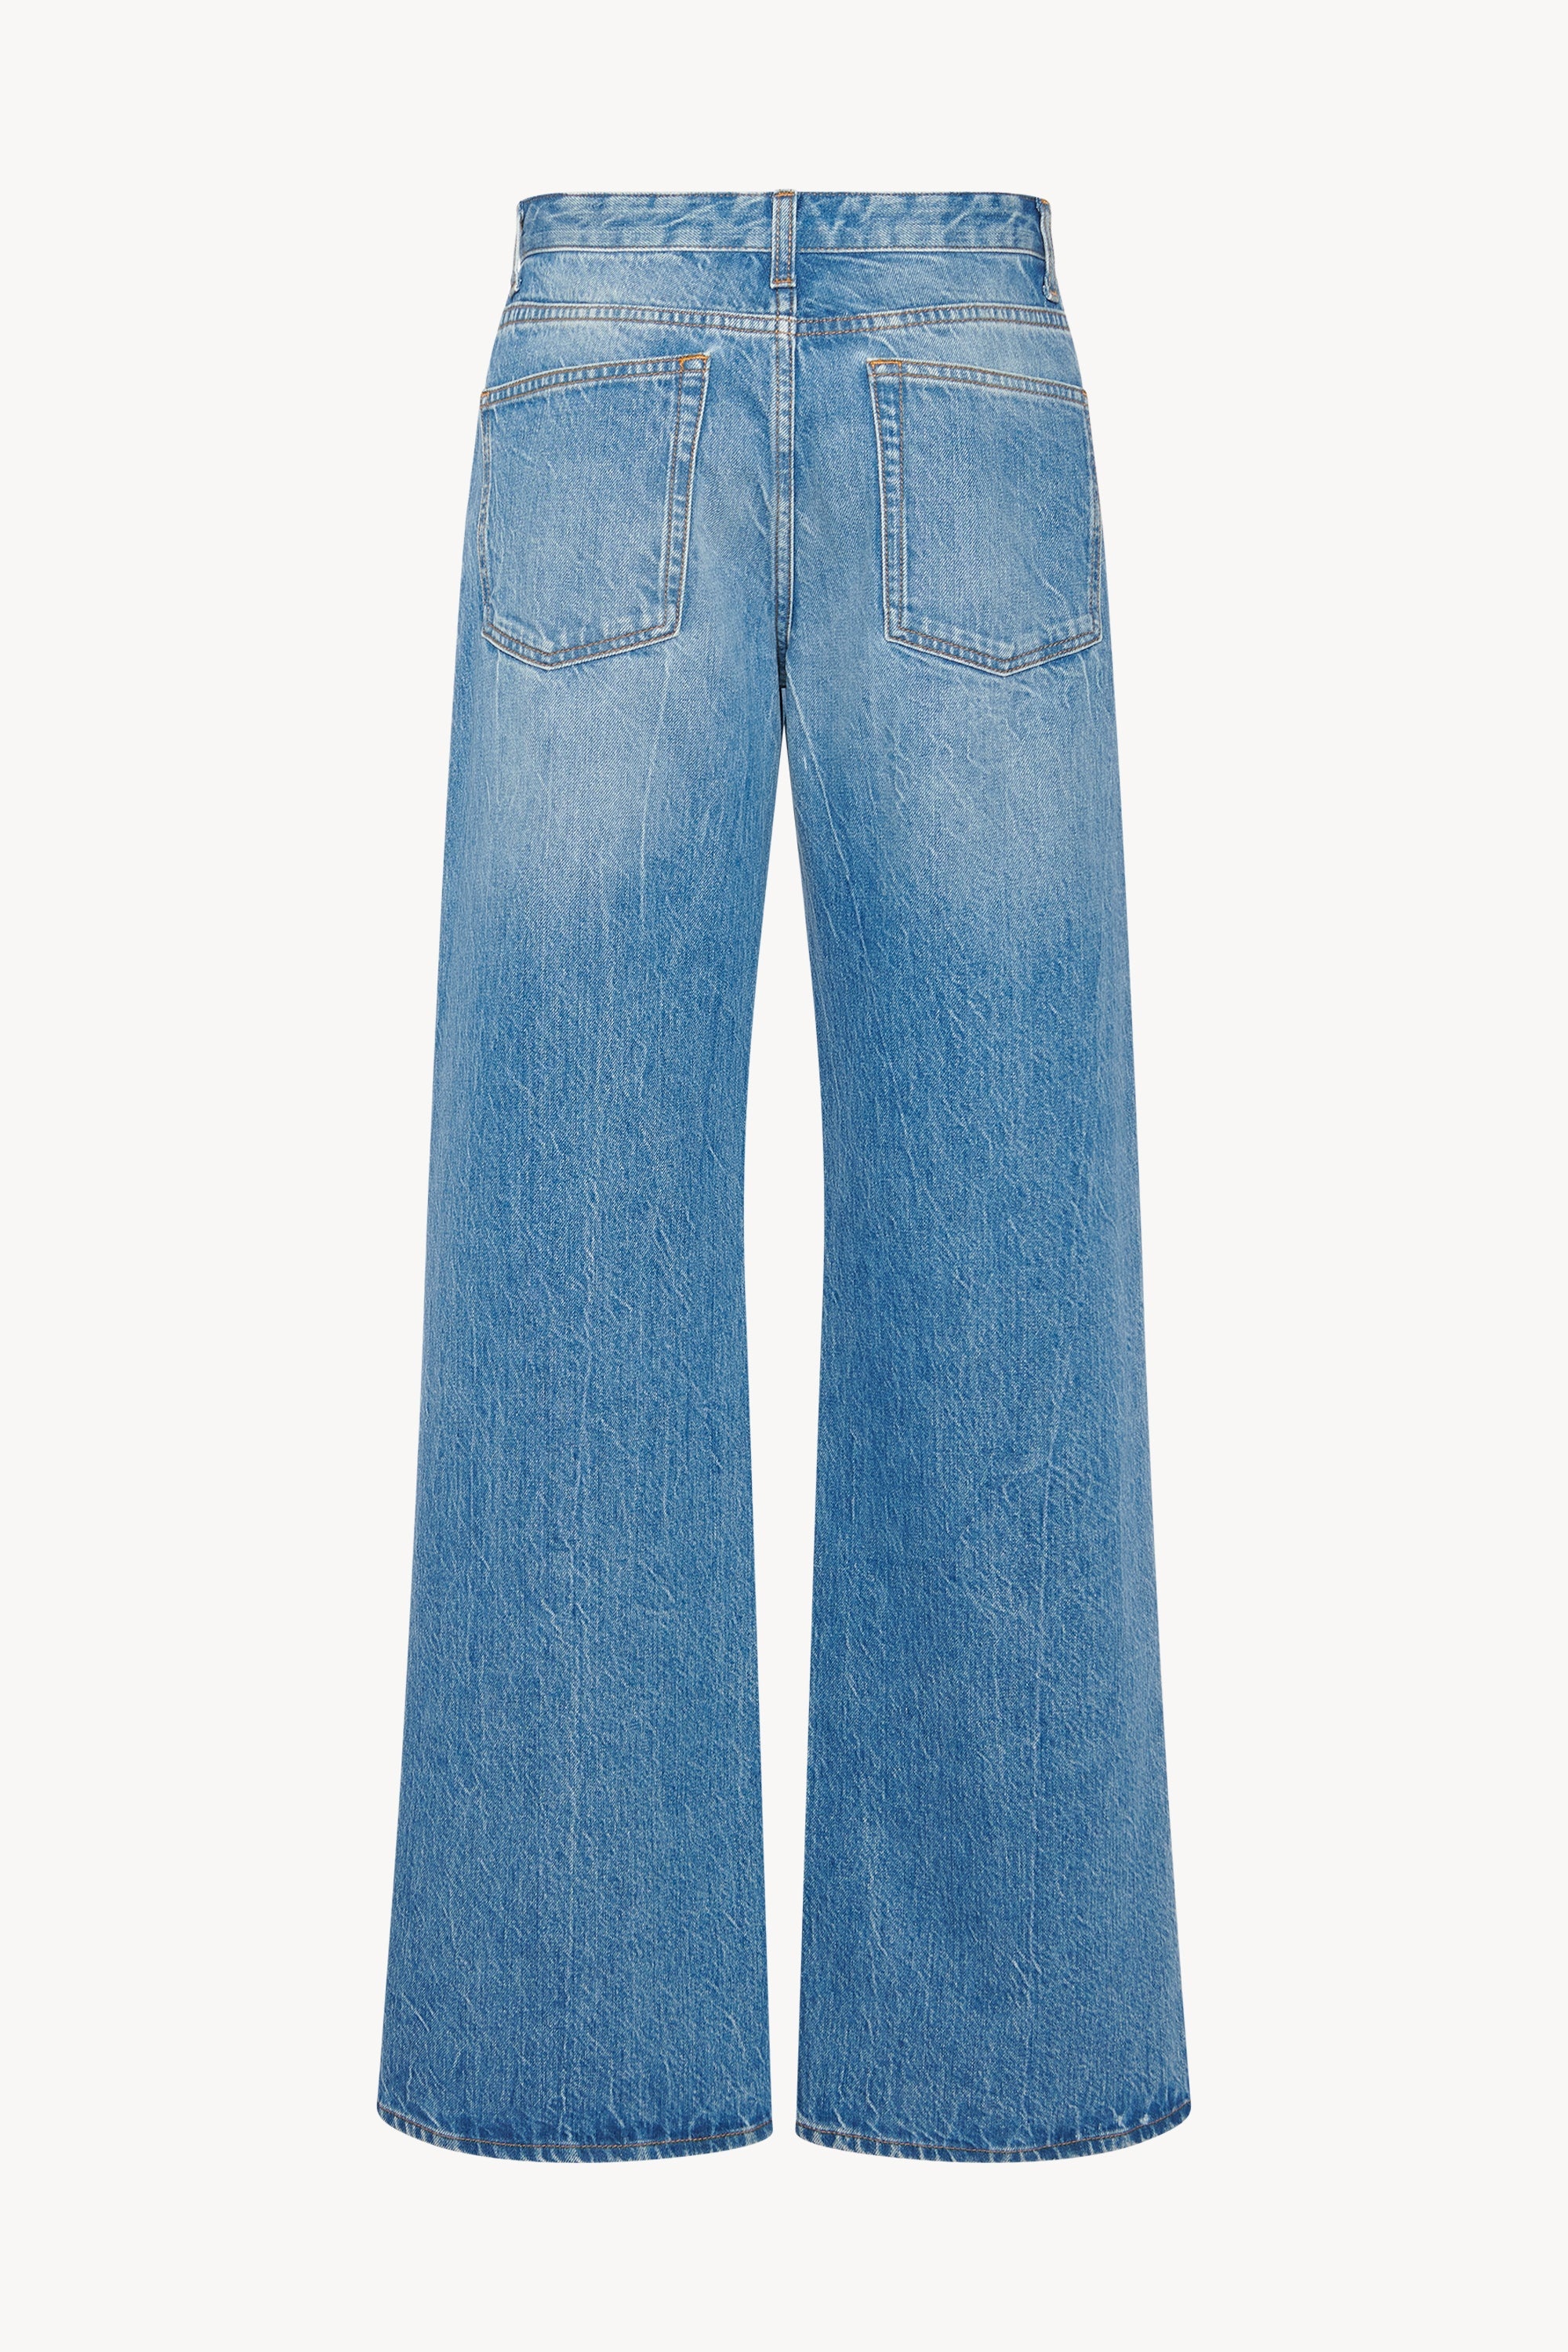 Eglitta Jeans in Cotton - 2